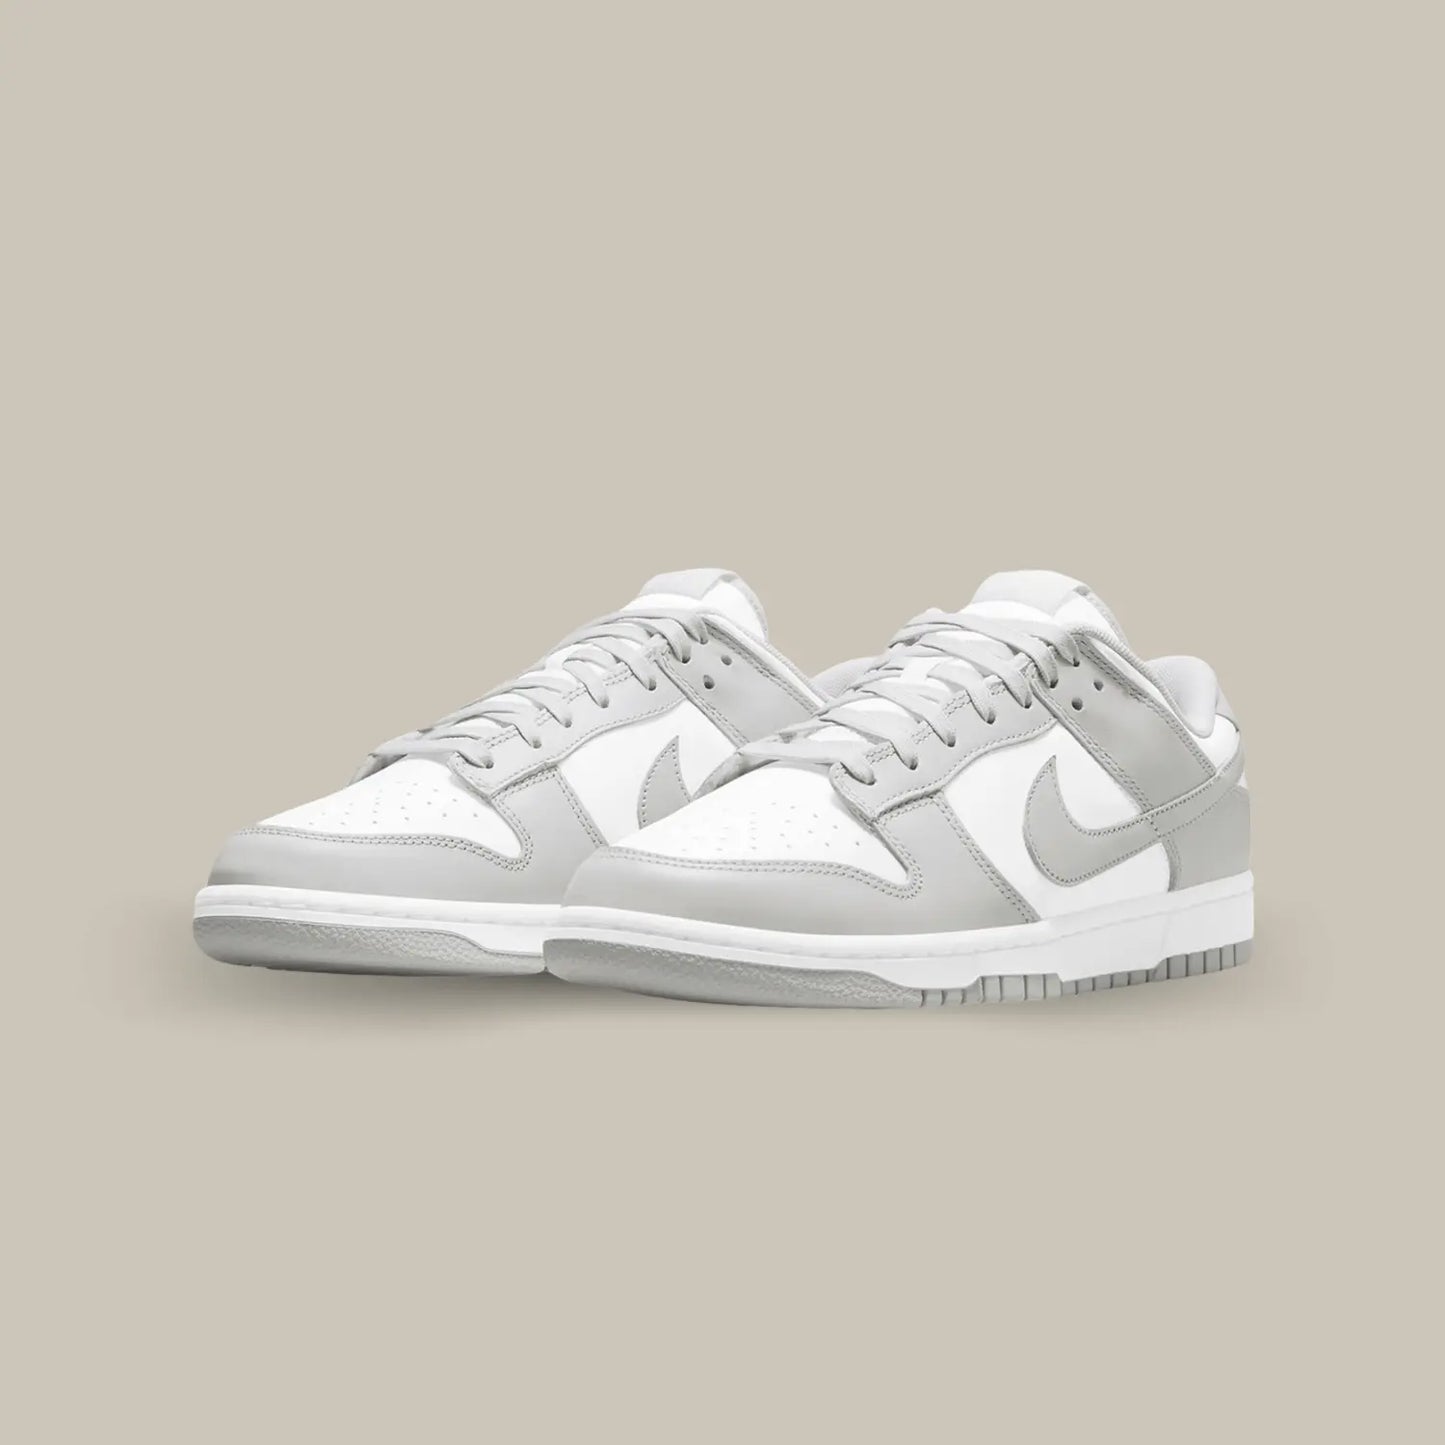 La Nike Dunk Low Grey Fog affiche l’habituelle empeigne en cuir blanc, relevée d’empiècements en cuir gris clair.